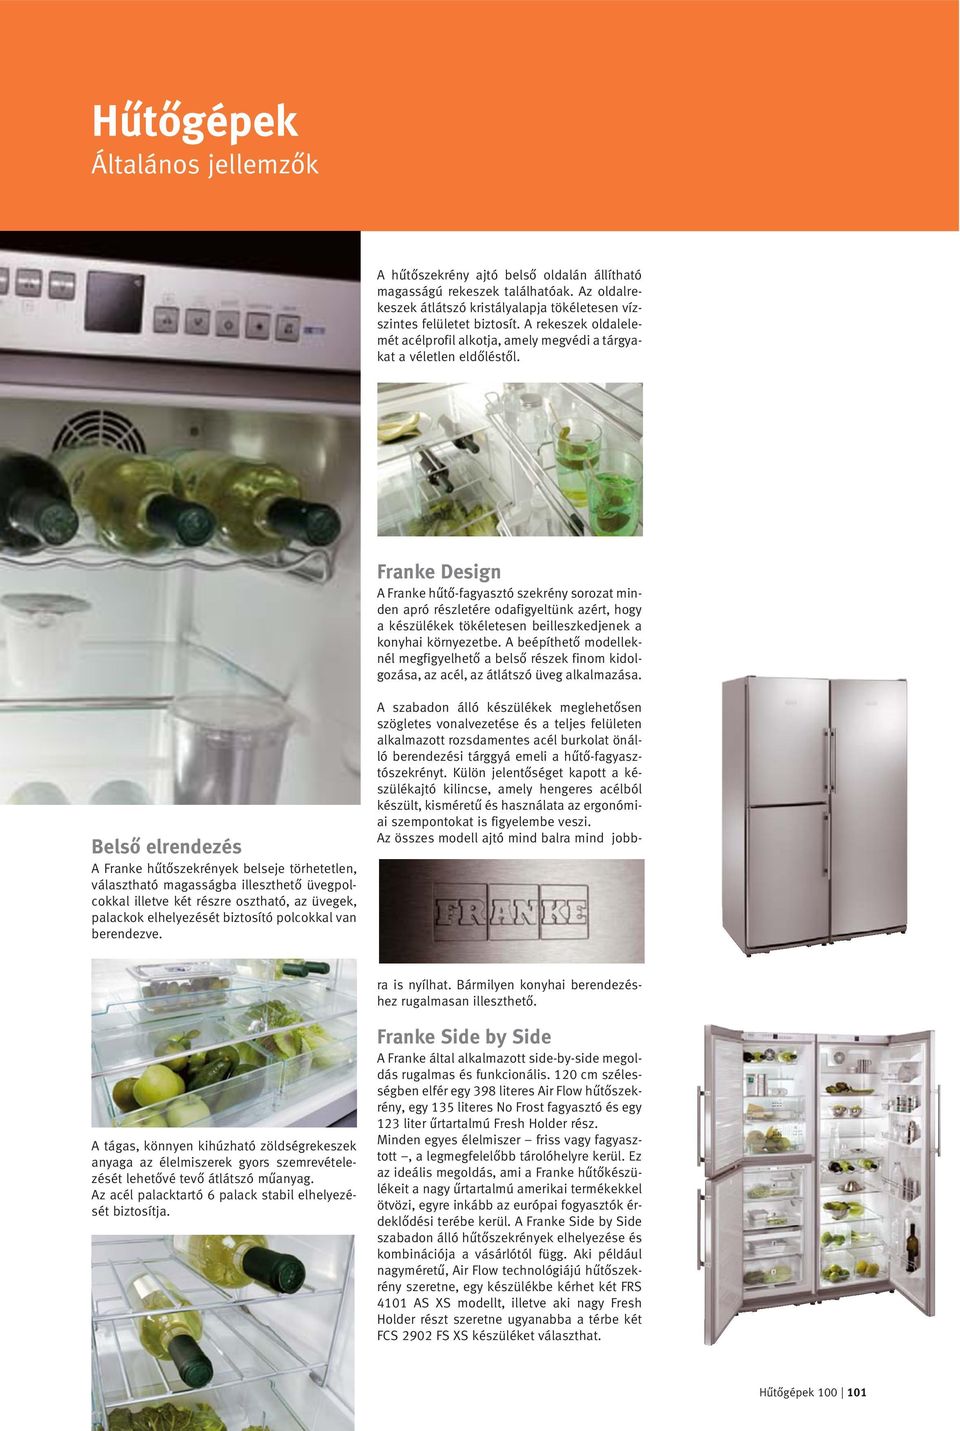 Franke Design A Franke hűtő-fagyasztó szekrény sorozat minden apró részletére odafigyeltünk azért, hogy a készülékek tökéletesen beilleszkedjenek a konyhai környezetbe.